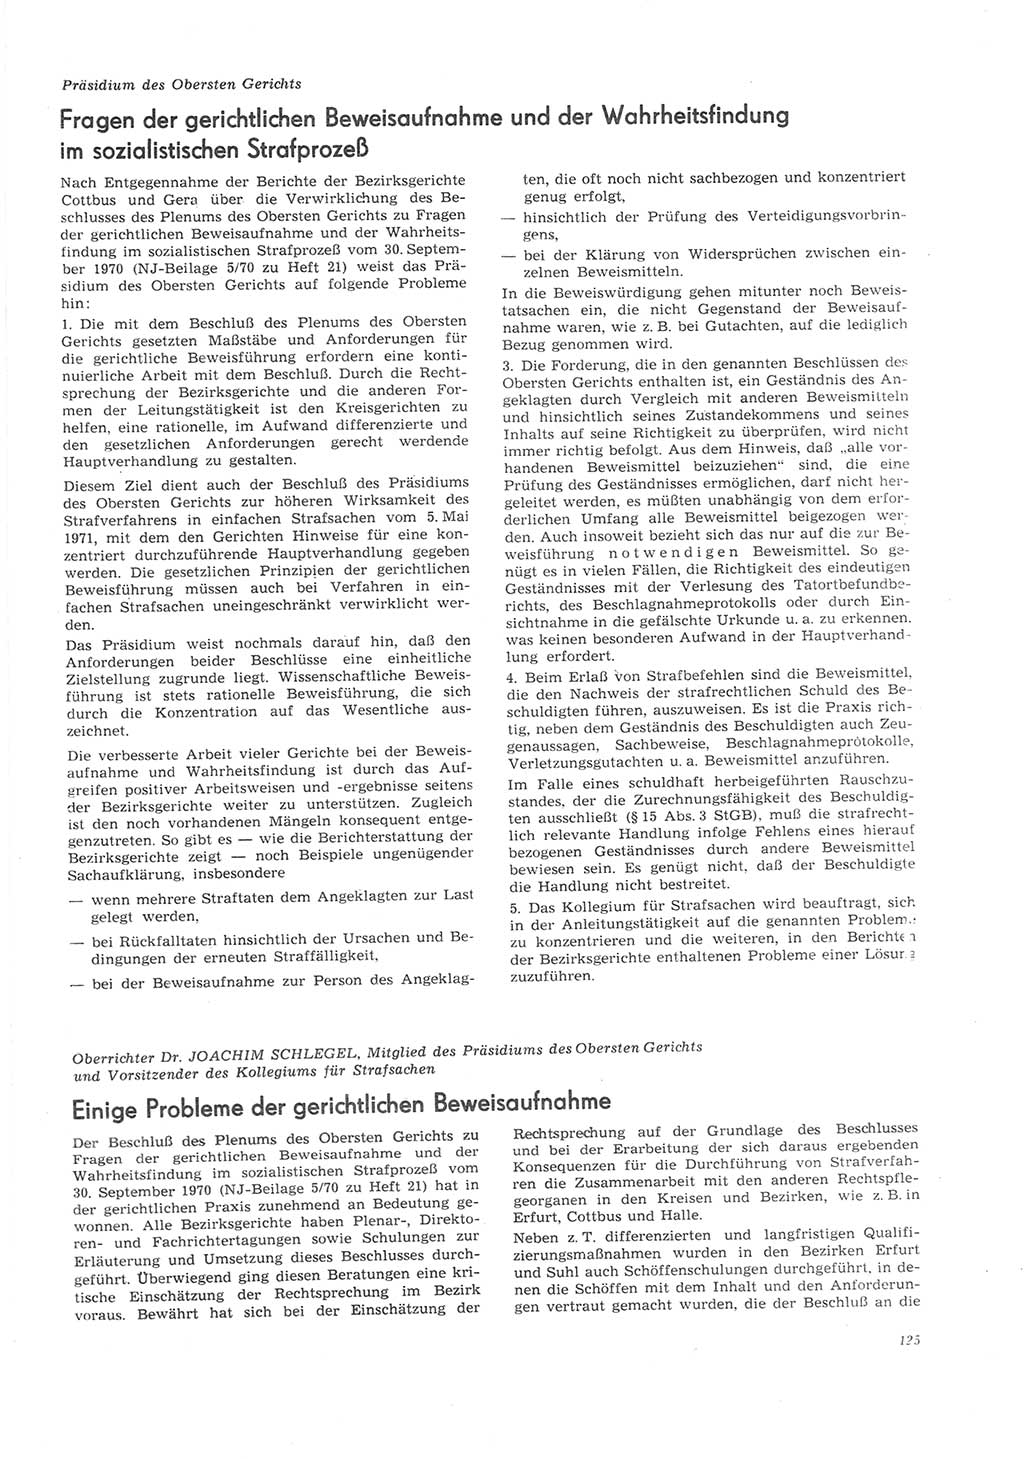 Neue Justiz (NJ), Zeitschrift für Recht und Rechtswissenschaft [Deutsche Demokratische Republik (DDR)], 26. Jahrgang 1972, Seite 125 (NJ DDR 1972, S. 125)